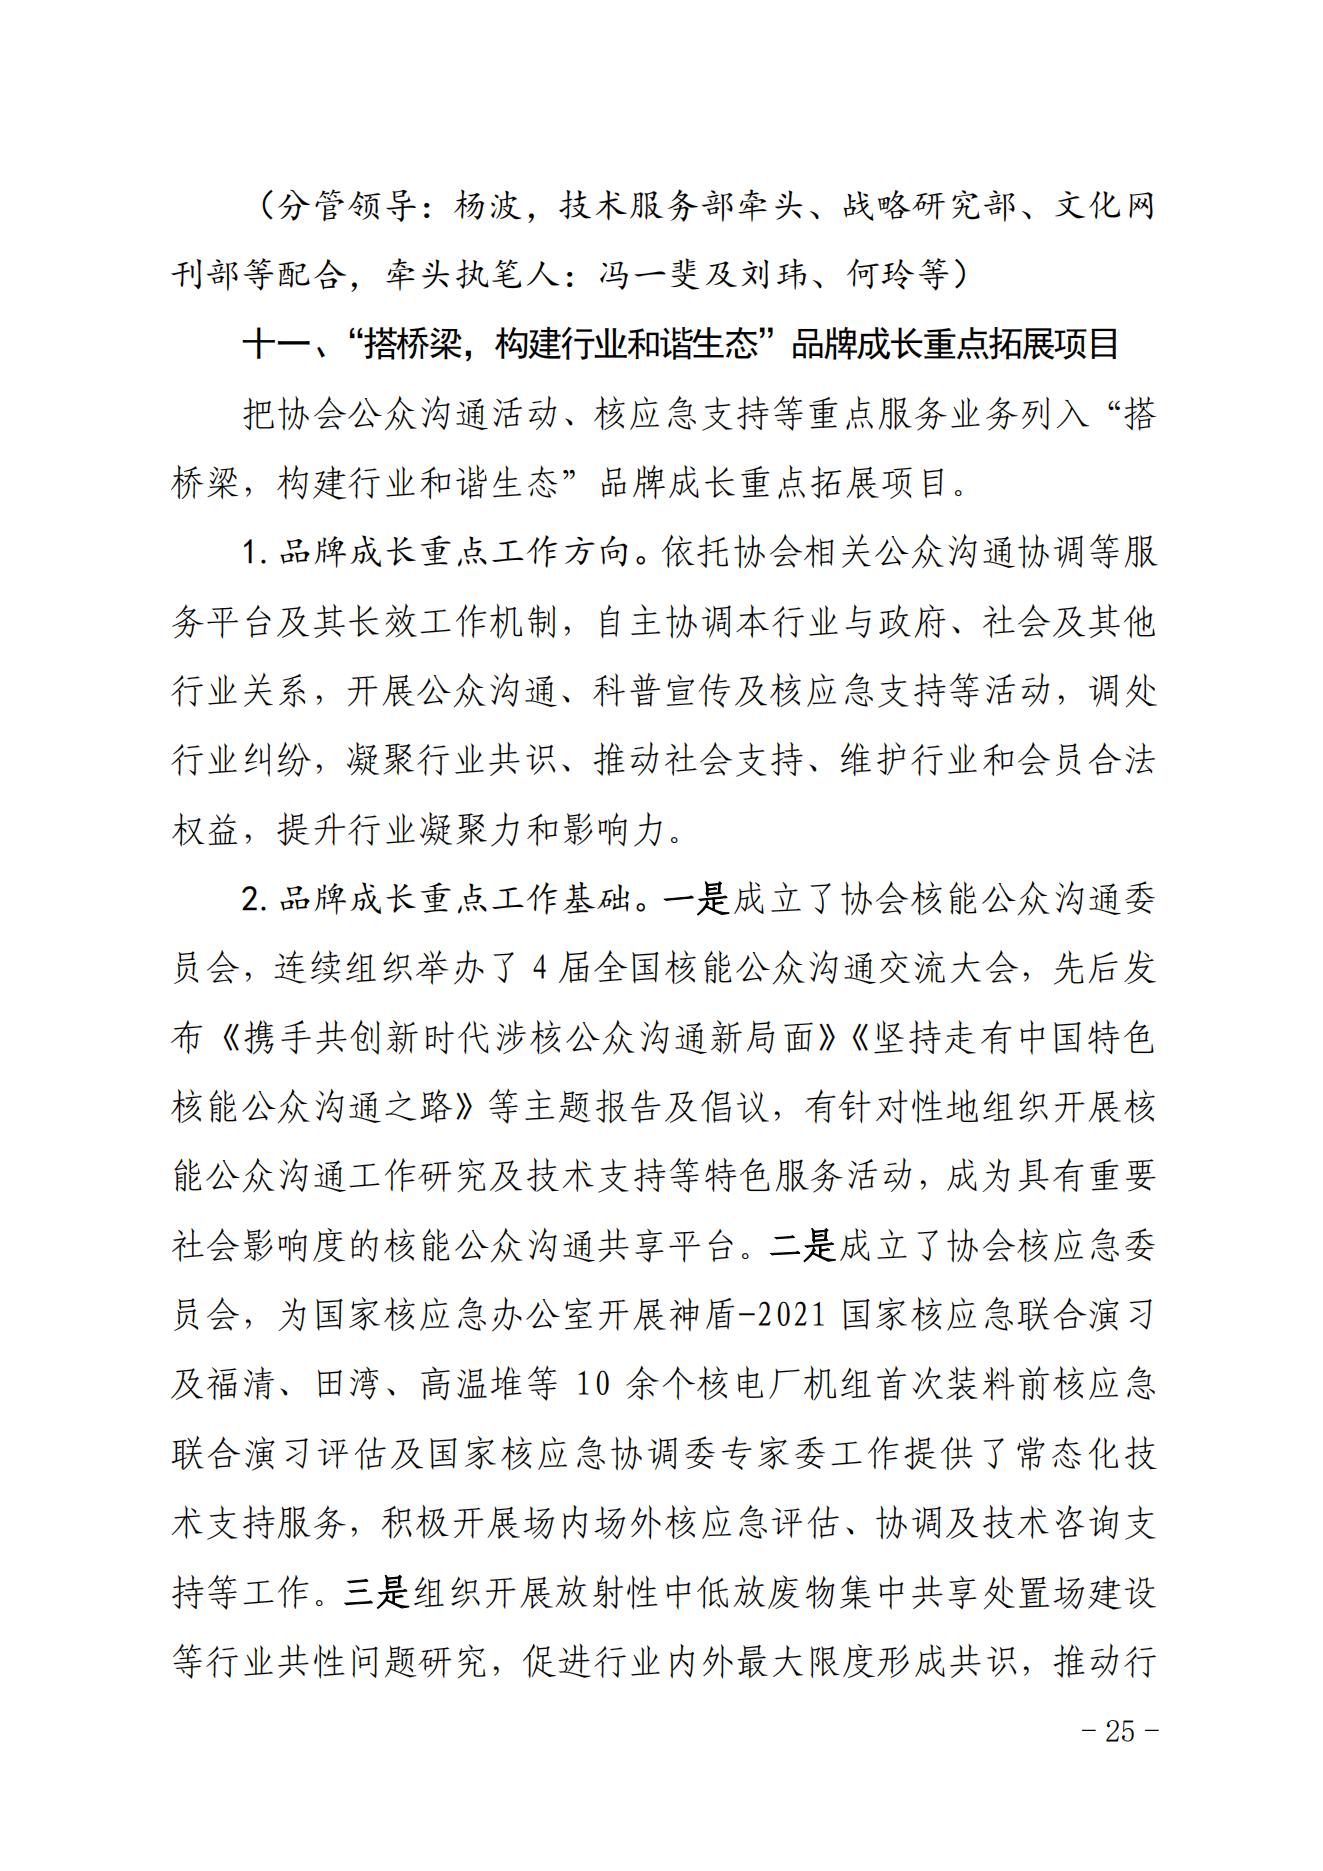 关于印发《中国核能行业协会“品牌协会成长计划”实施方案》的通知_24.jpg